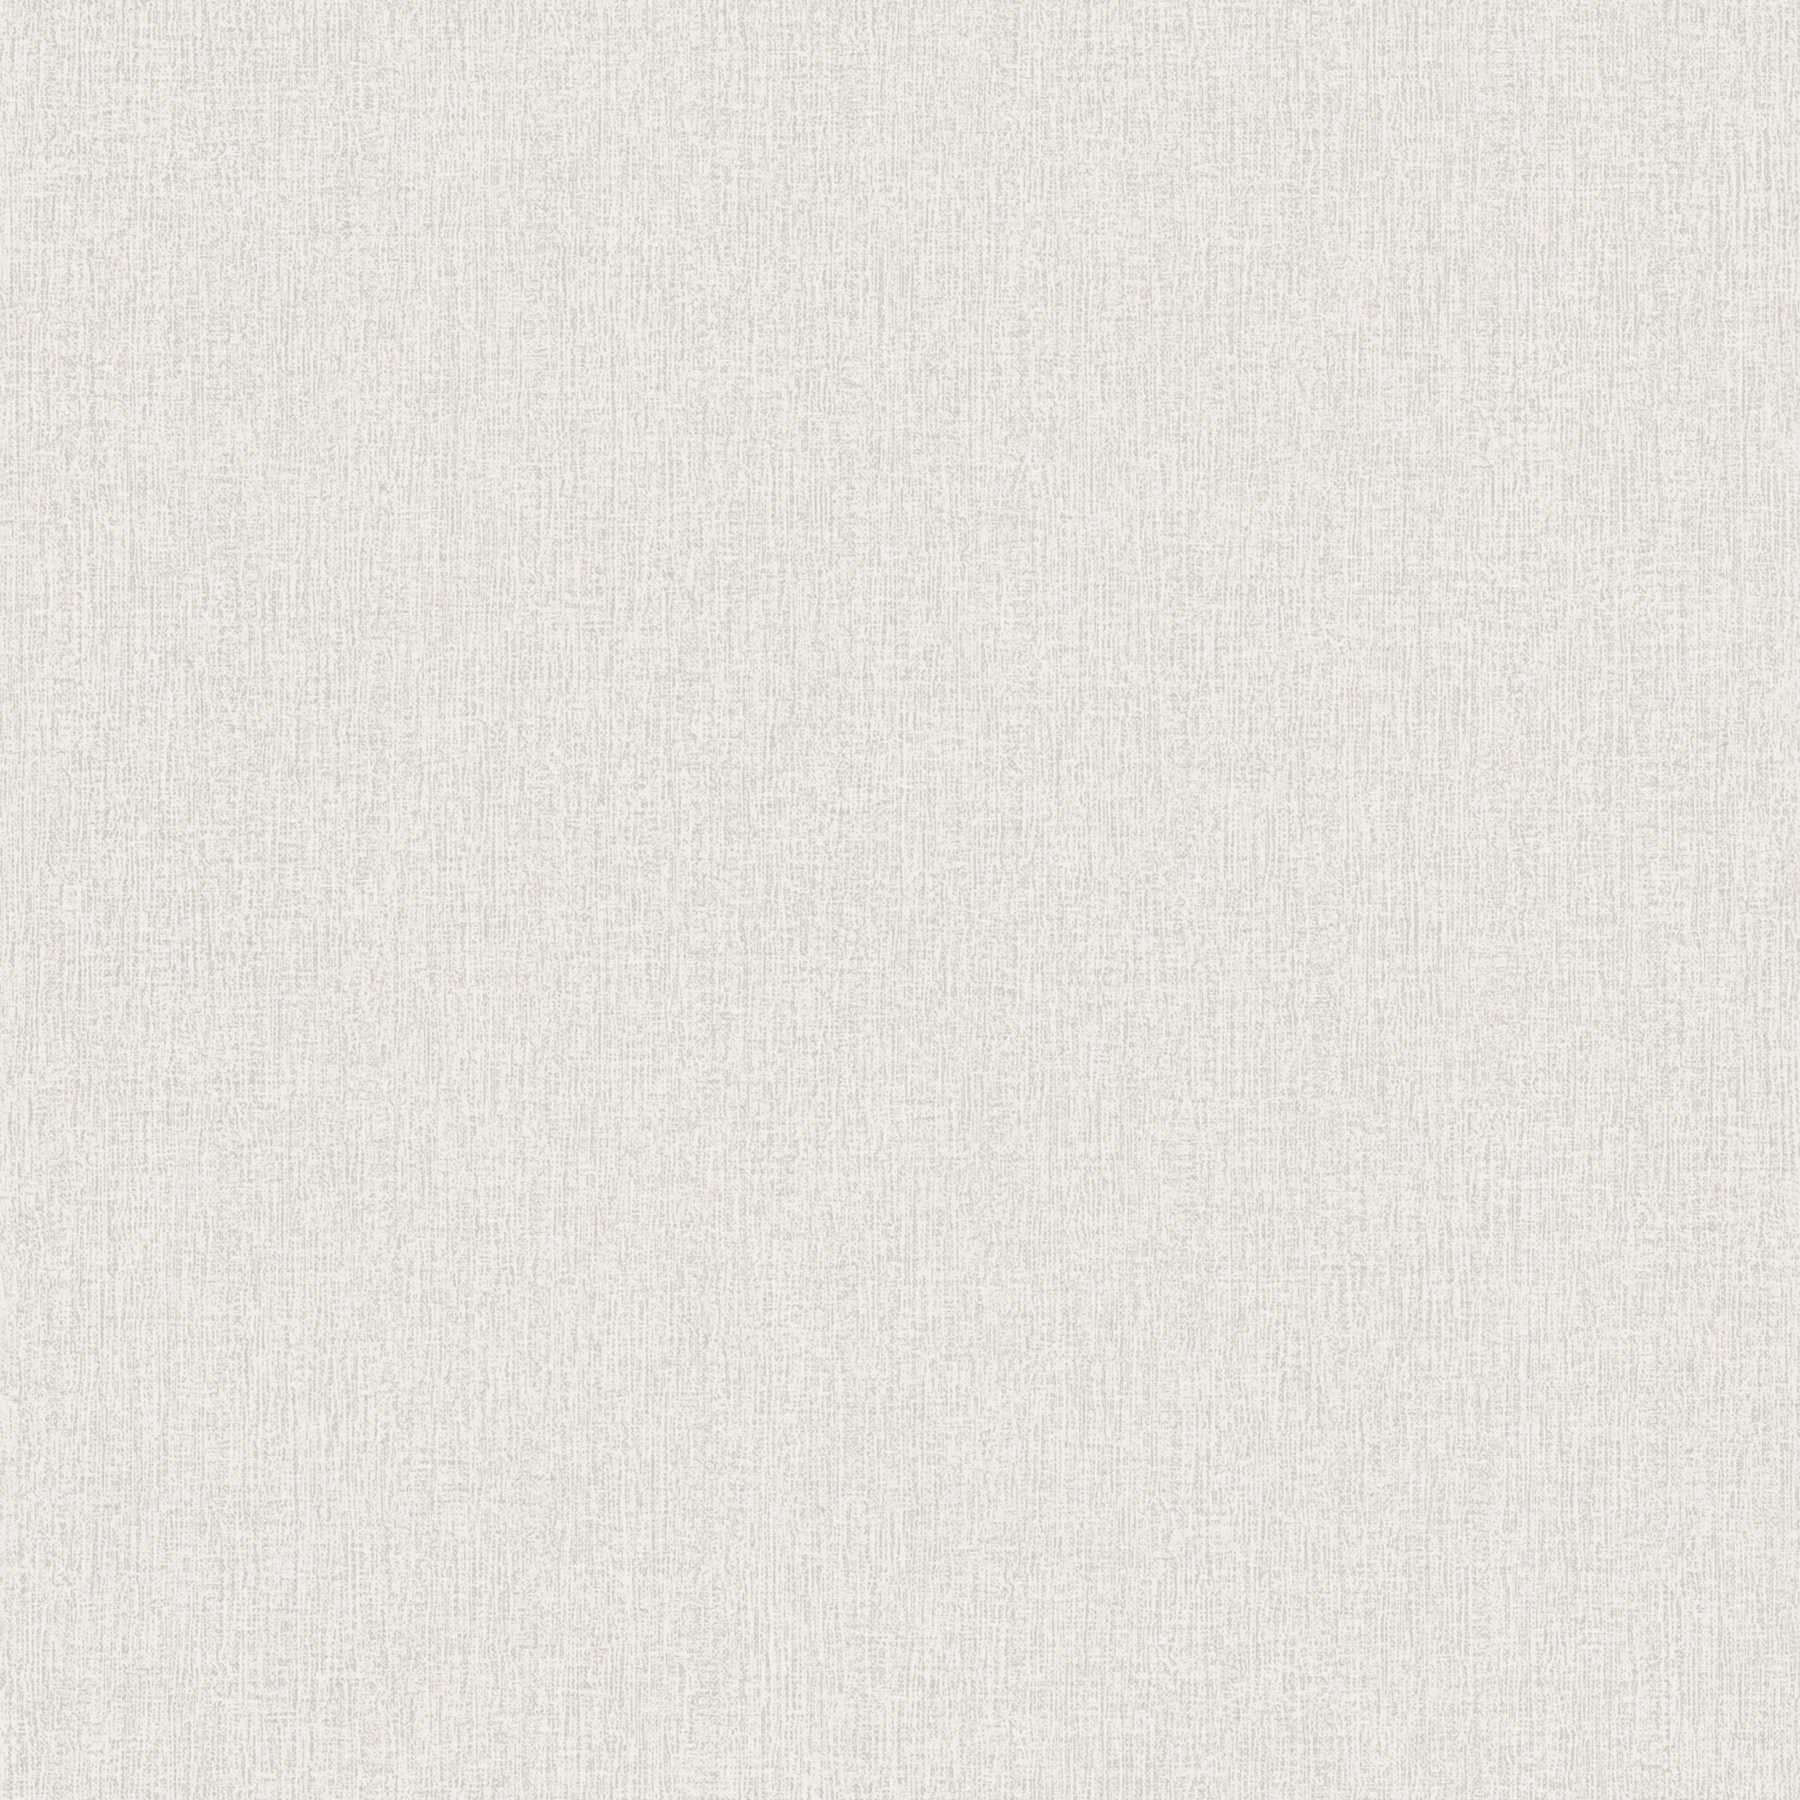 Carta da parati liscia screziata, con trama del tessuto - bianco, grigio
